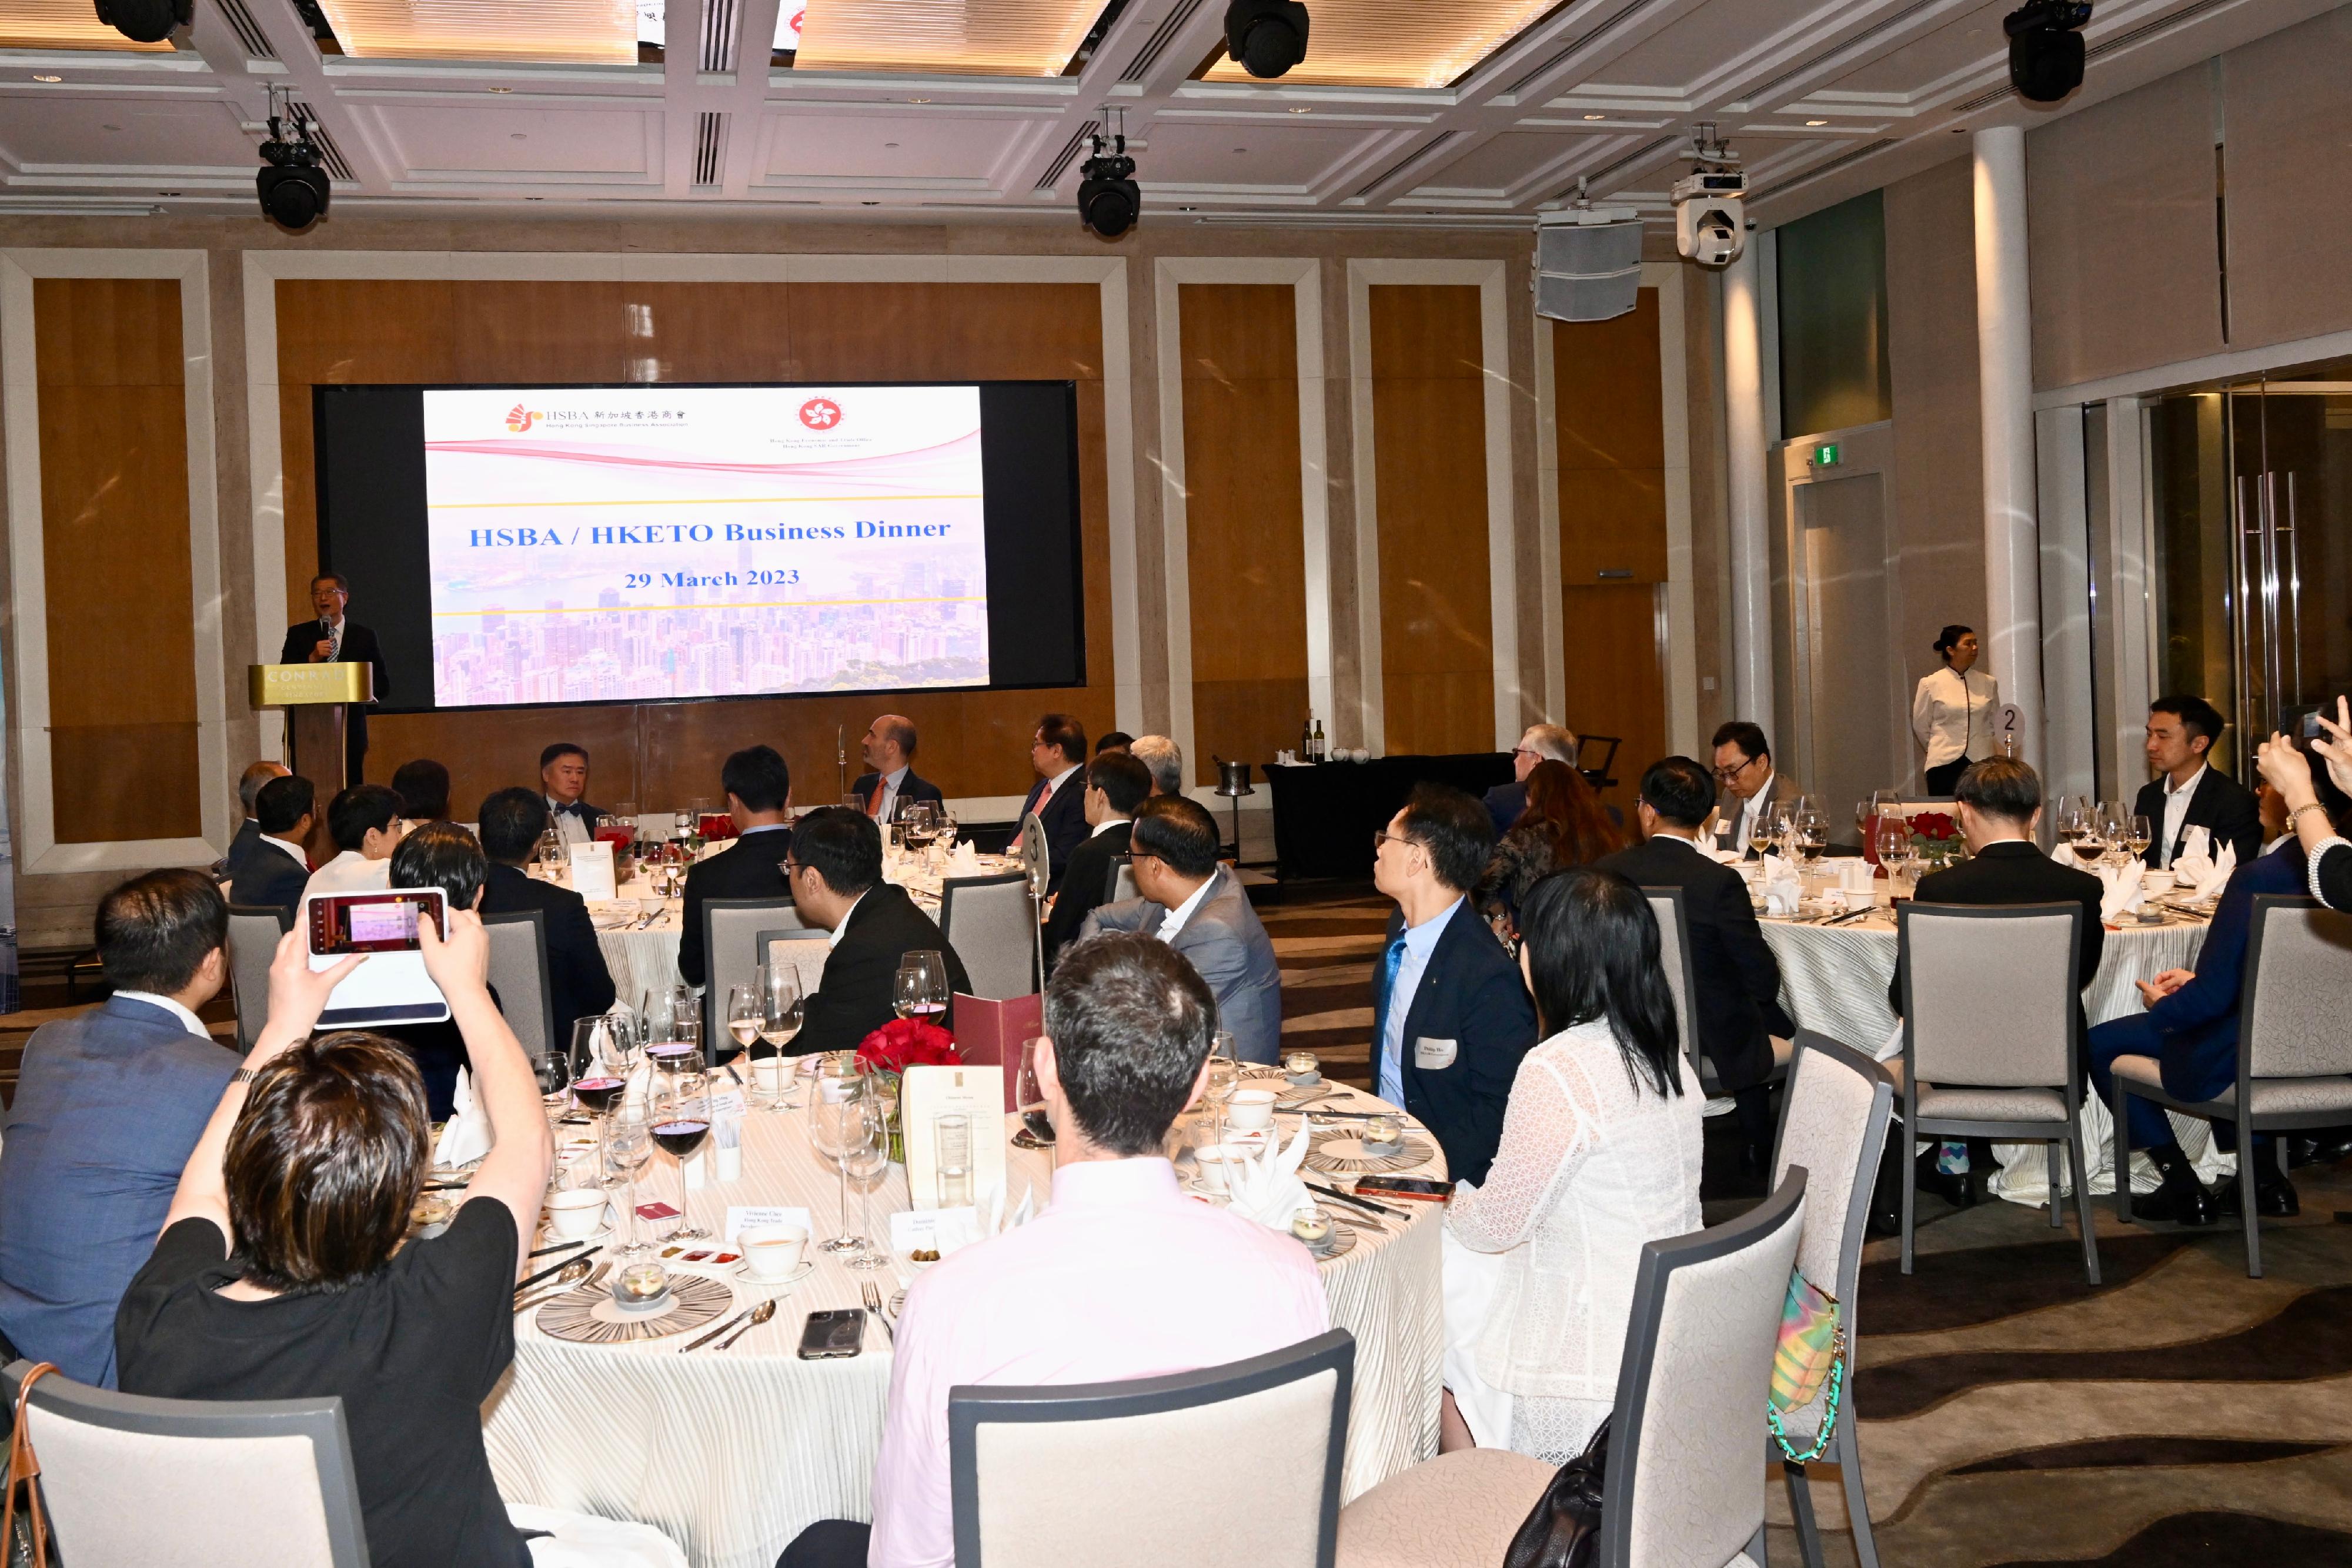 財政司司長陳茂波三月二十九日展開新加坡訪問行程。圖示陳茂波與新加坡主要商會成員晚宴上致辭。
